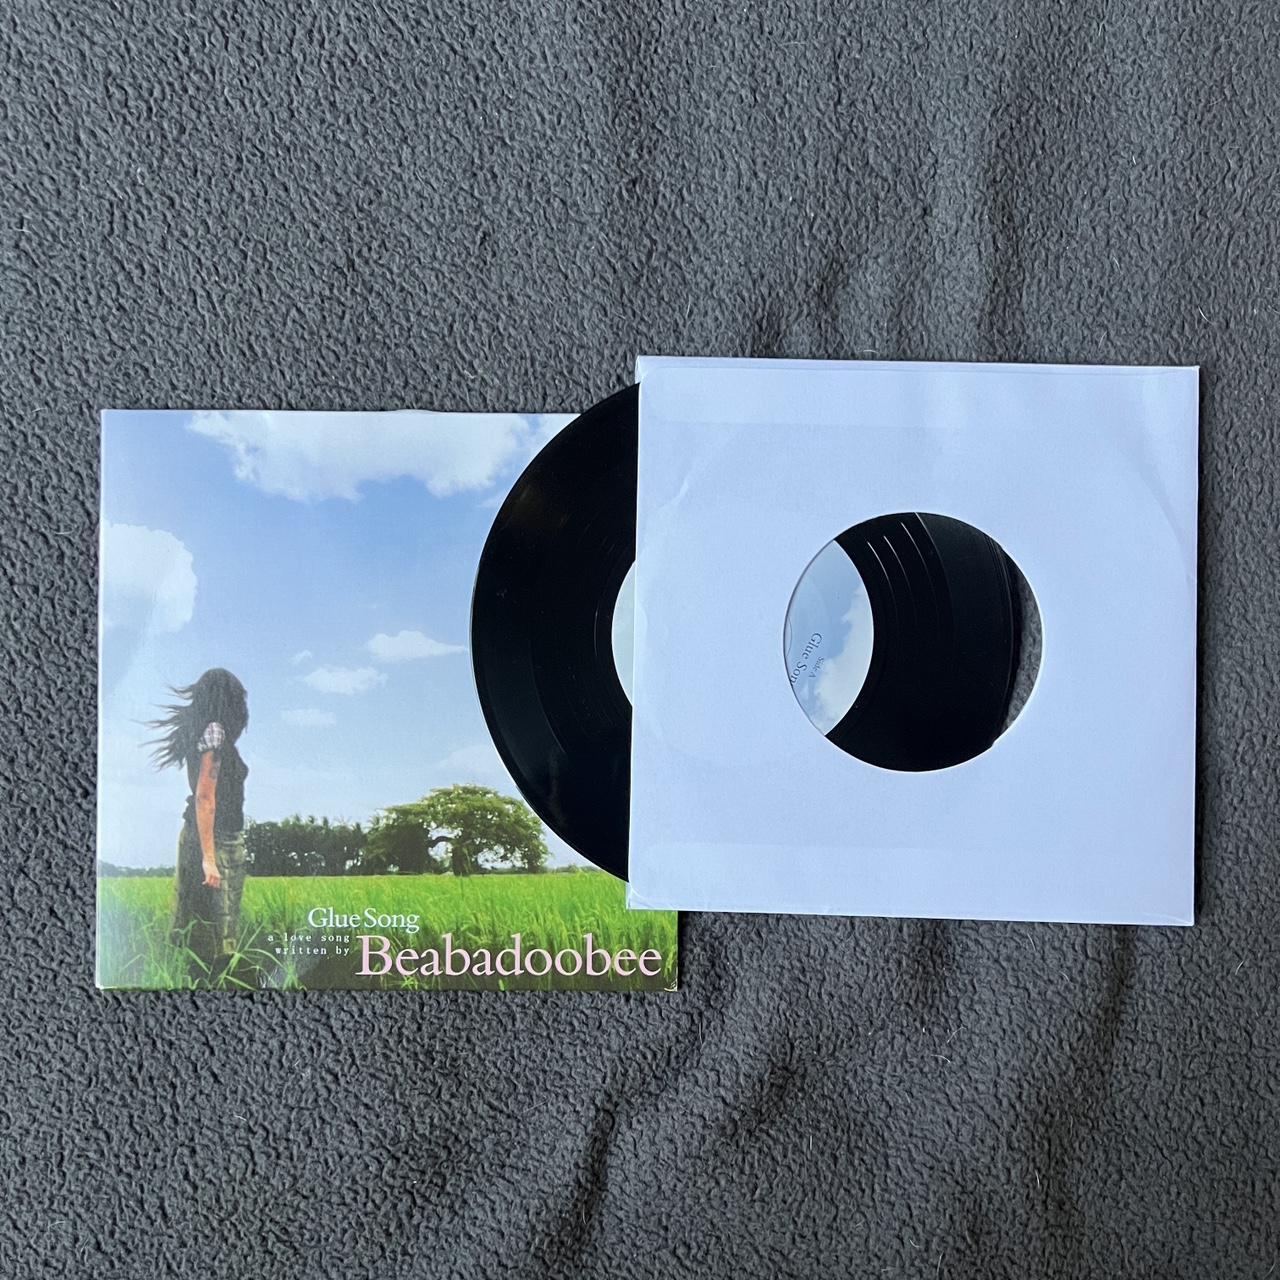 Beabadoobee “Glue Song” 7-Inch Vinyl, Never been